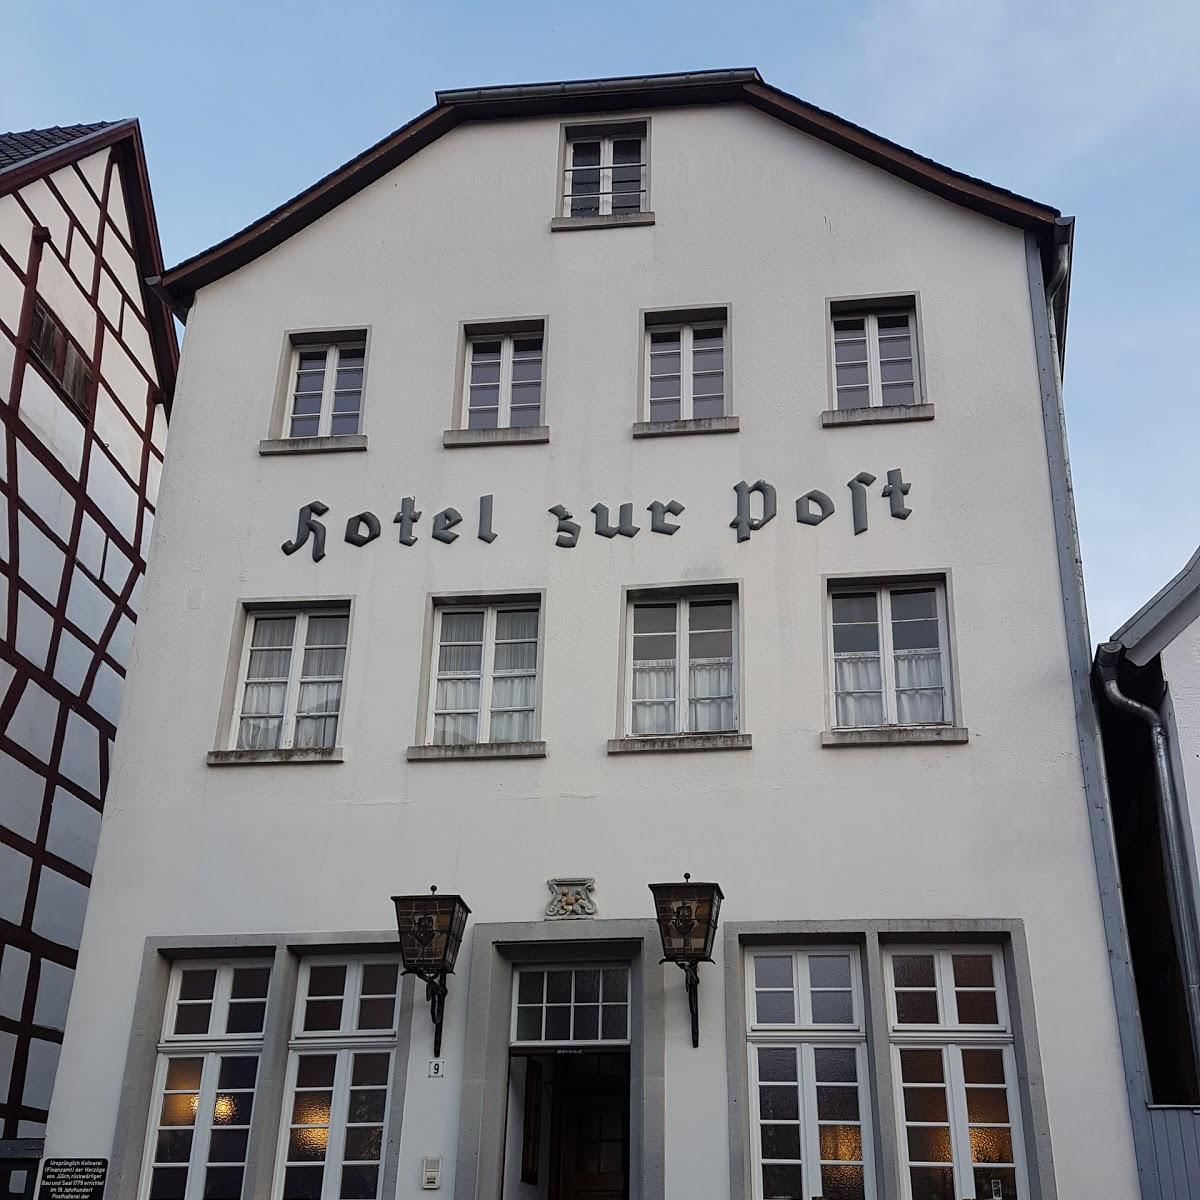 Restaurant "Hotel Zur Post" in Bad Münstereifel